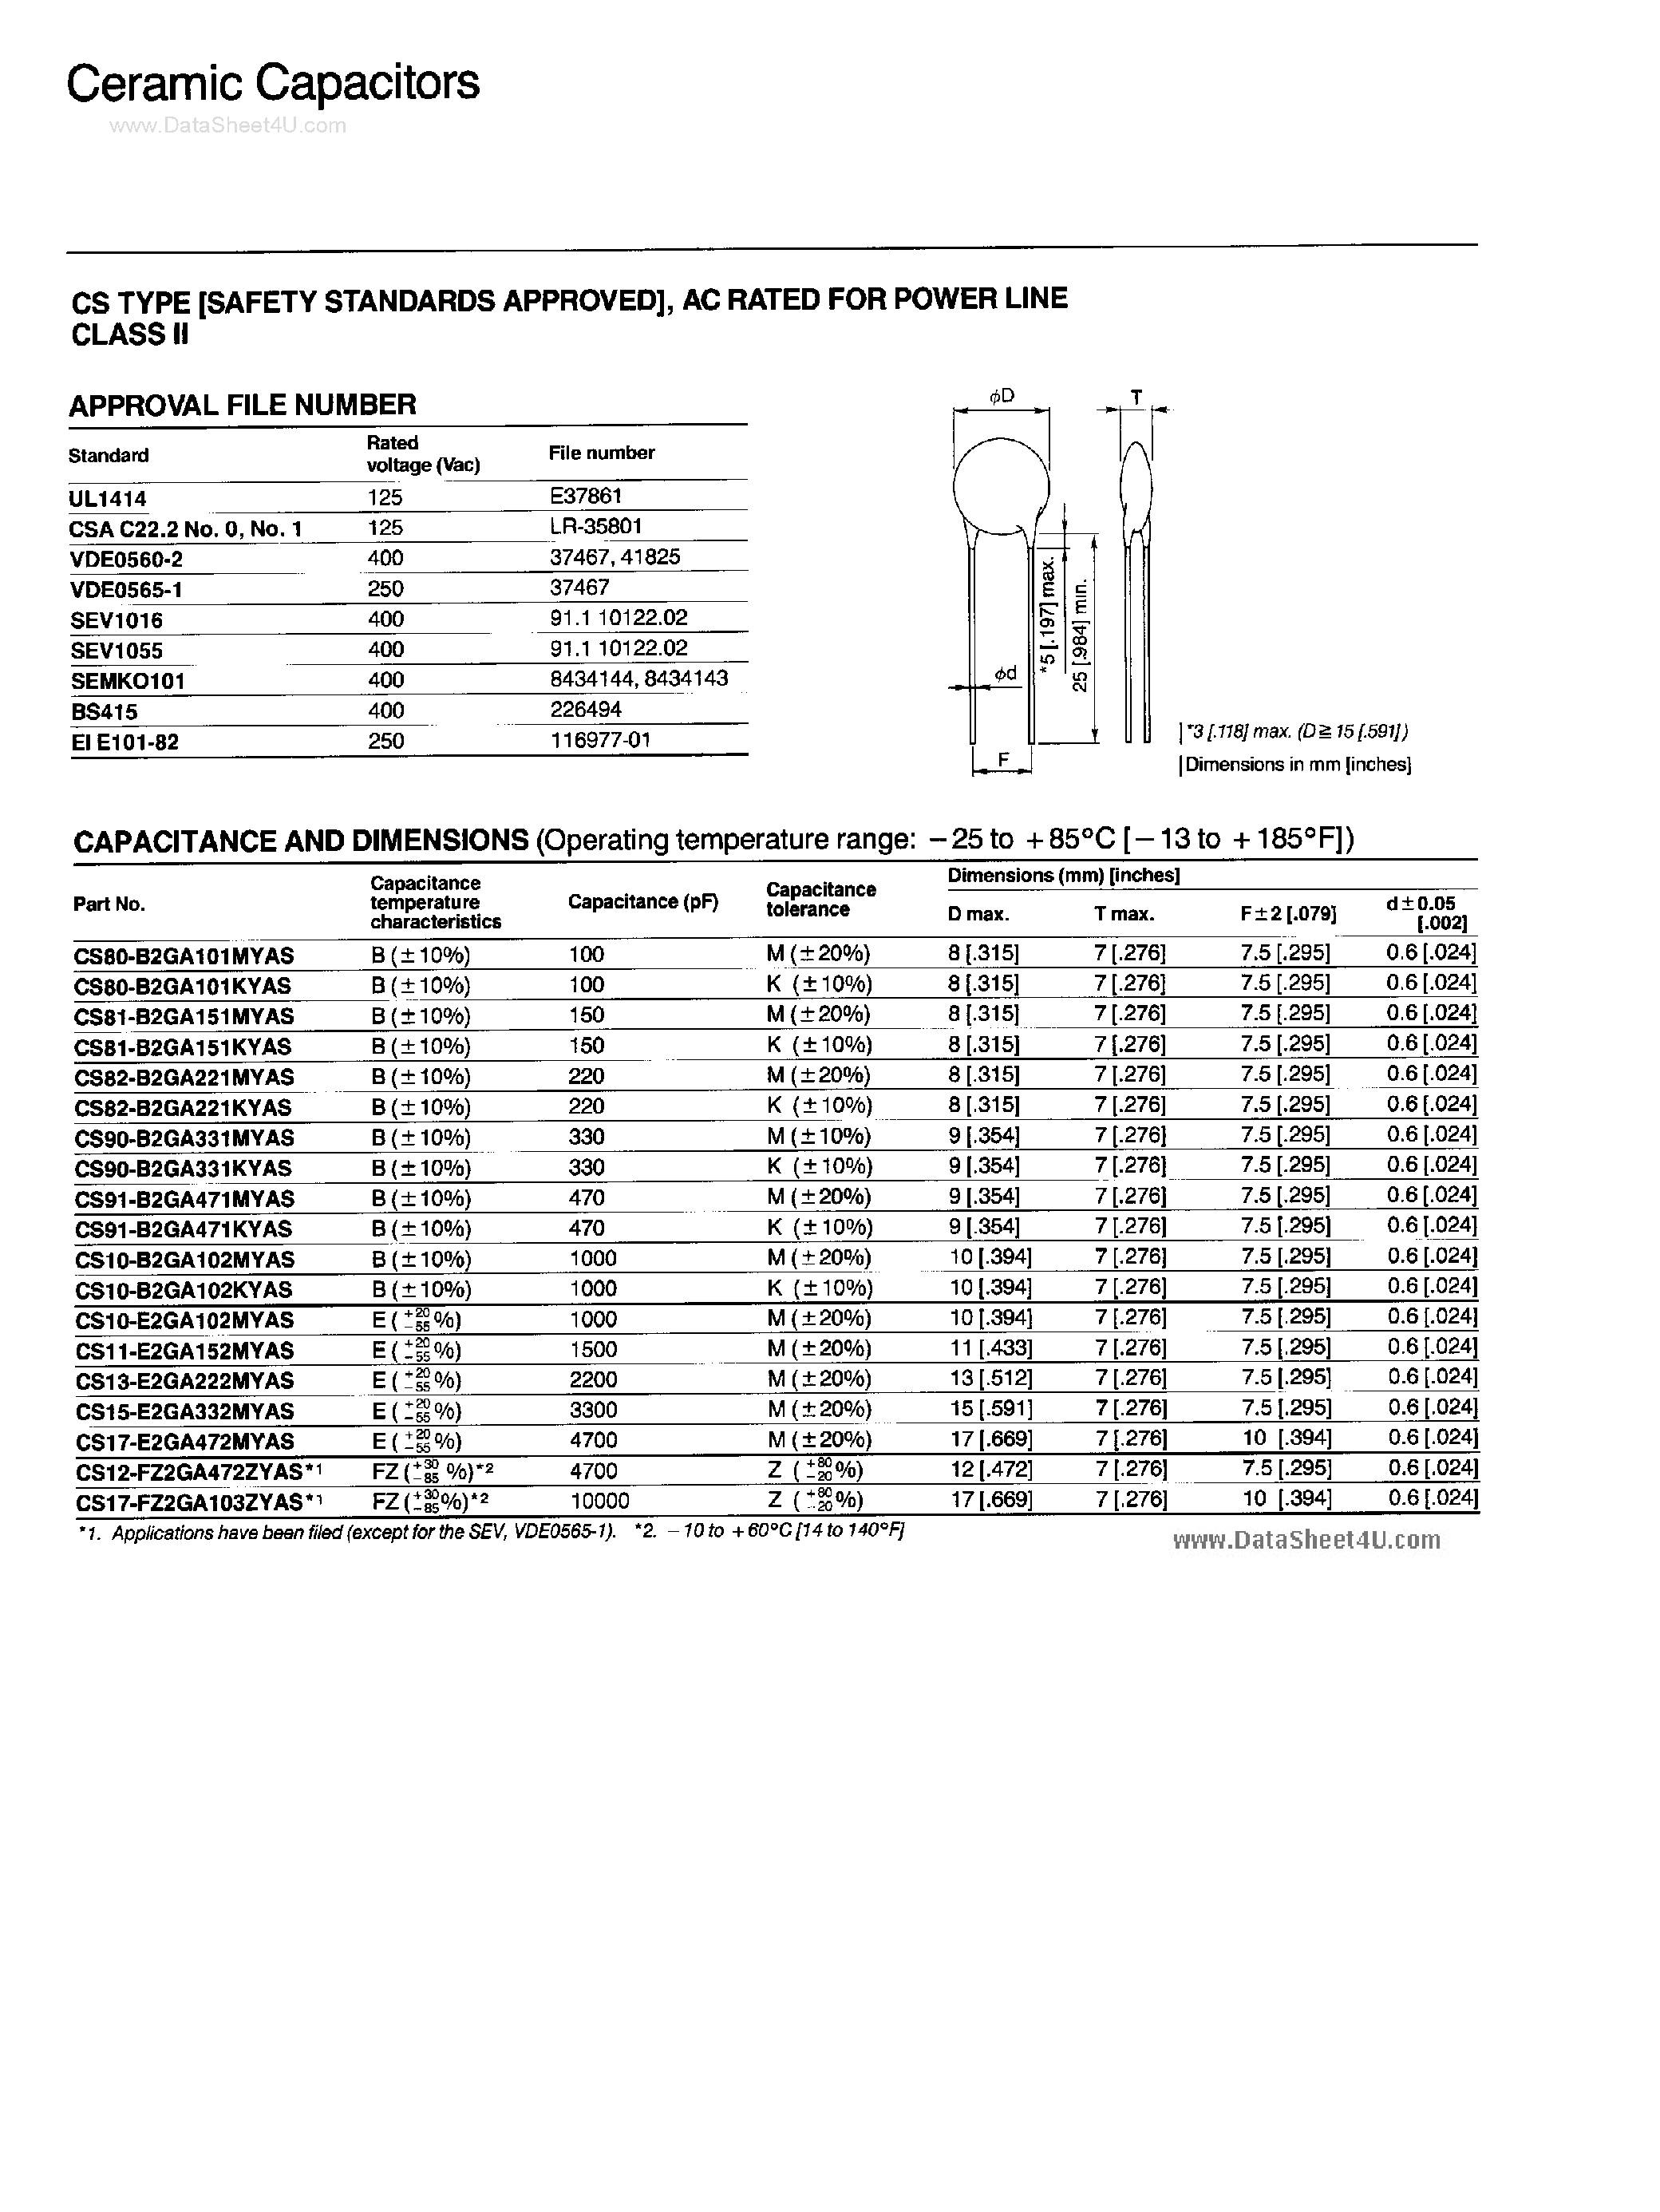 Даташит CS10-B2GA102KYAS - Ceramic Capacitors страница 1